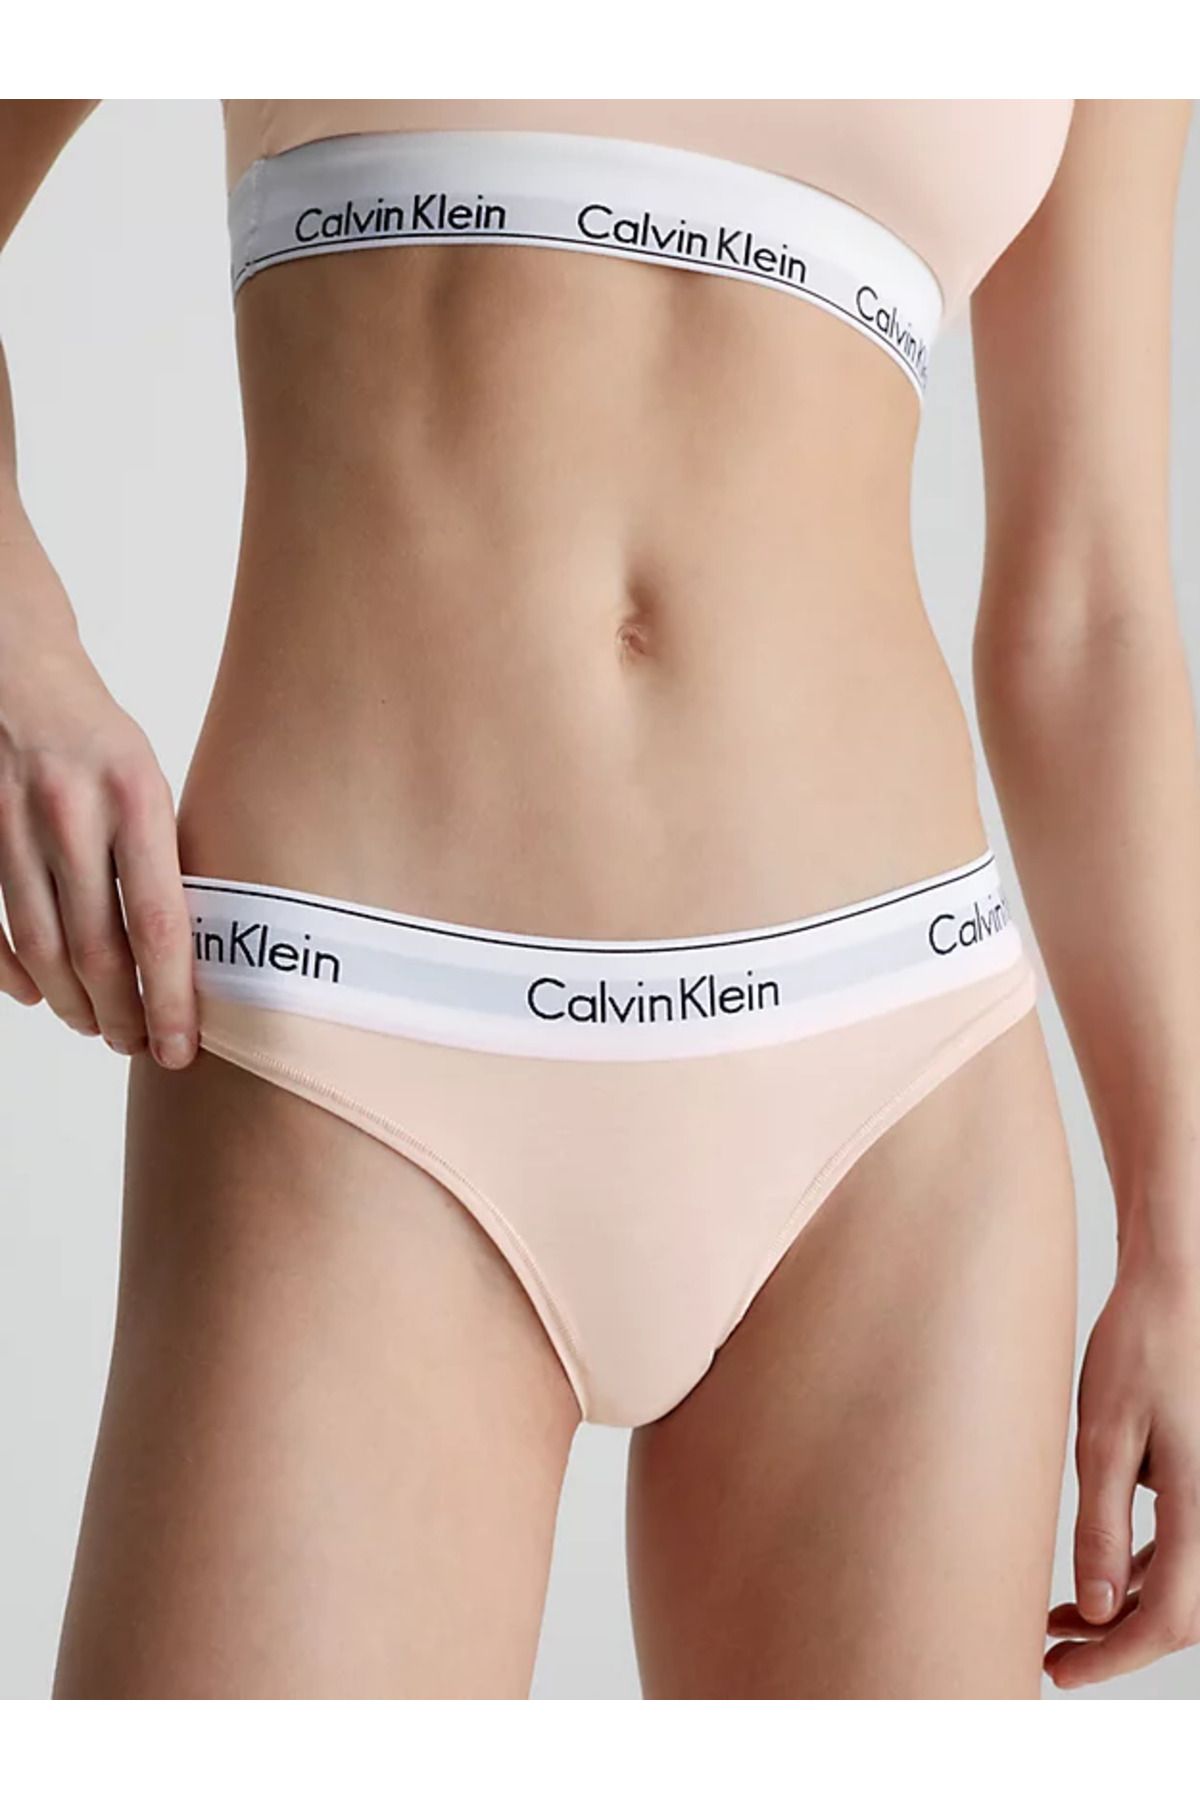 Calvin Klein Kadın Marka Logolu Elastik Bantlı Günlük Kullanıma Uygun Pembe Külot 0000f3786e-2nt